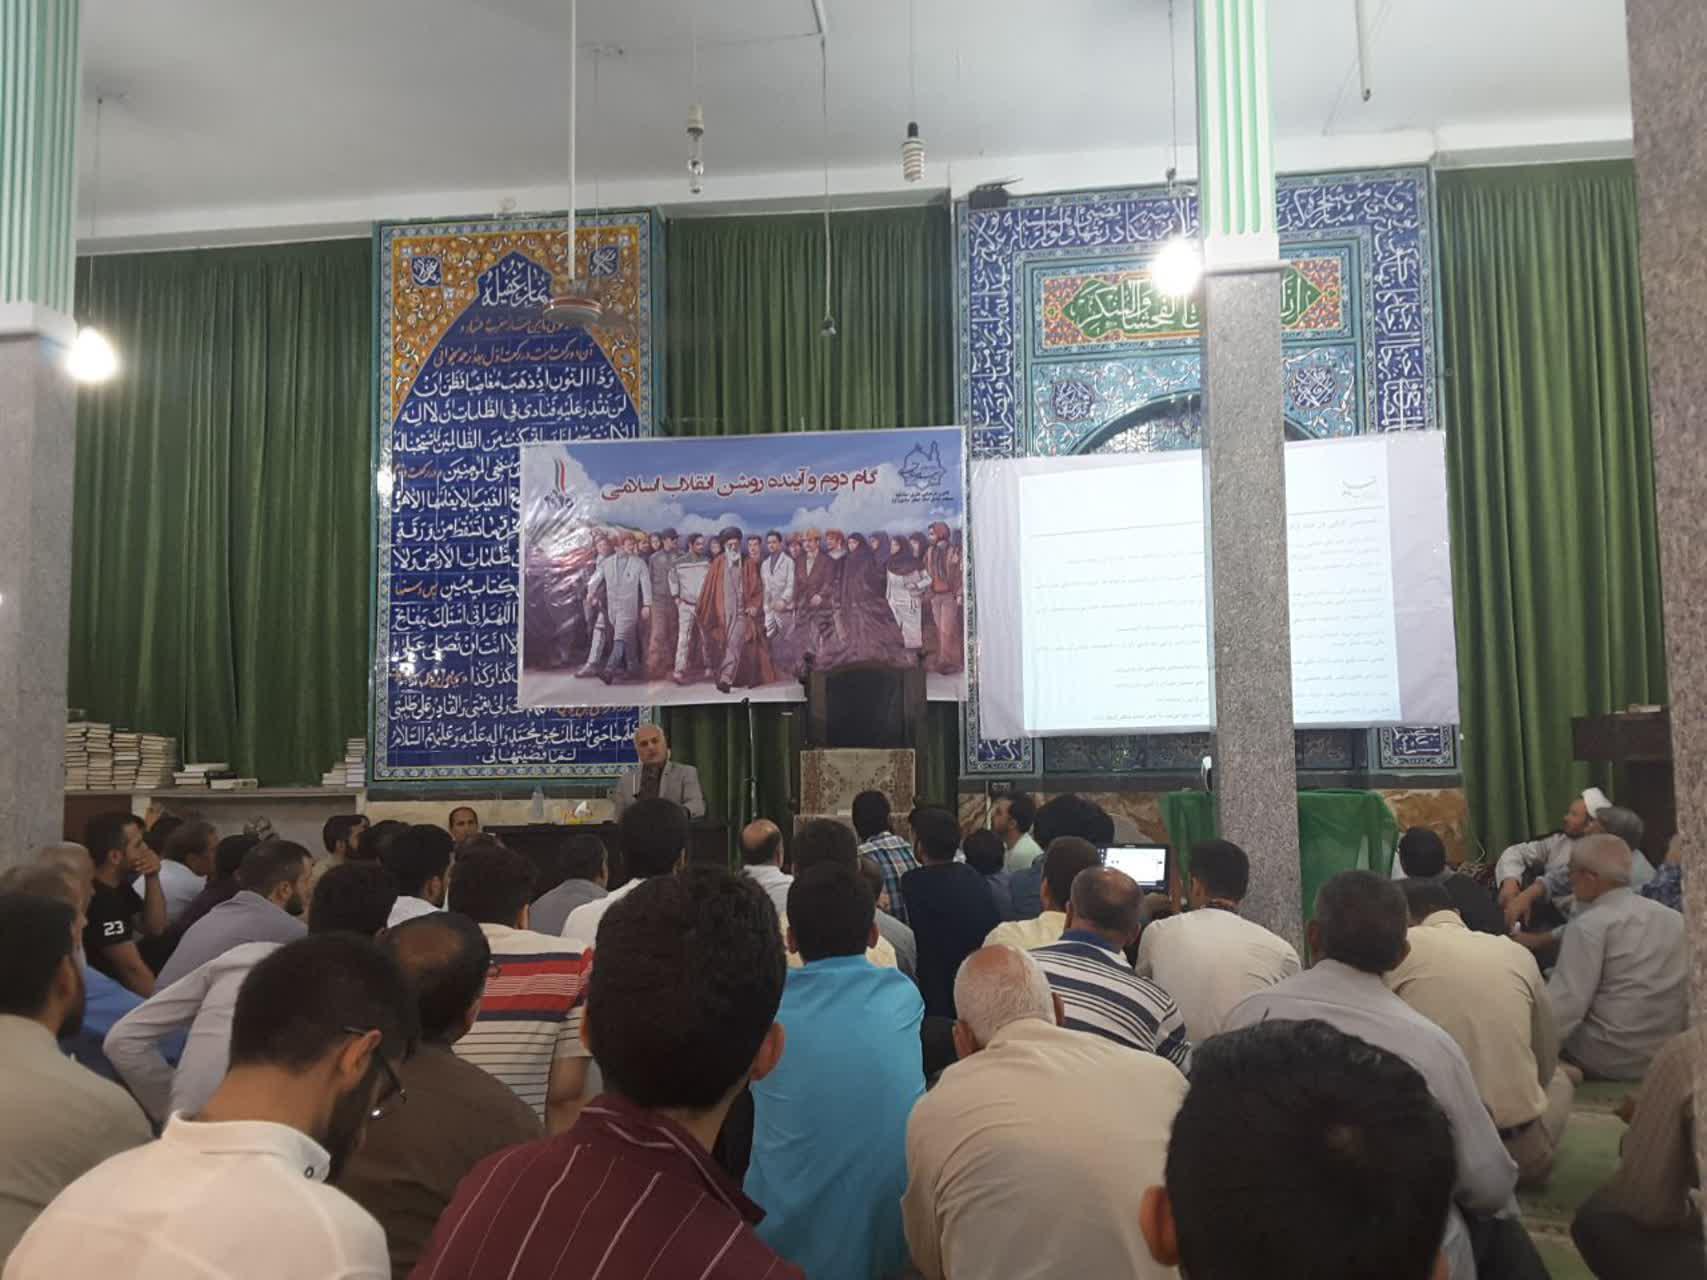 سخنرانی استاد حسن عباسی در ملارد - گام دوم و آینده روشن انقلاب اسلامی